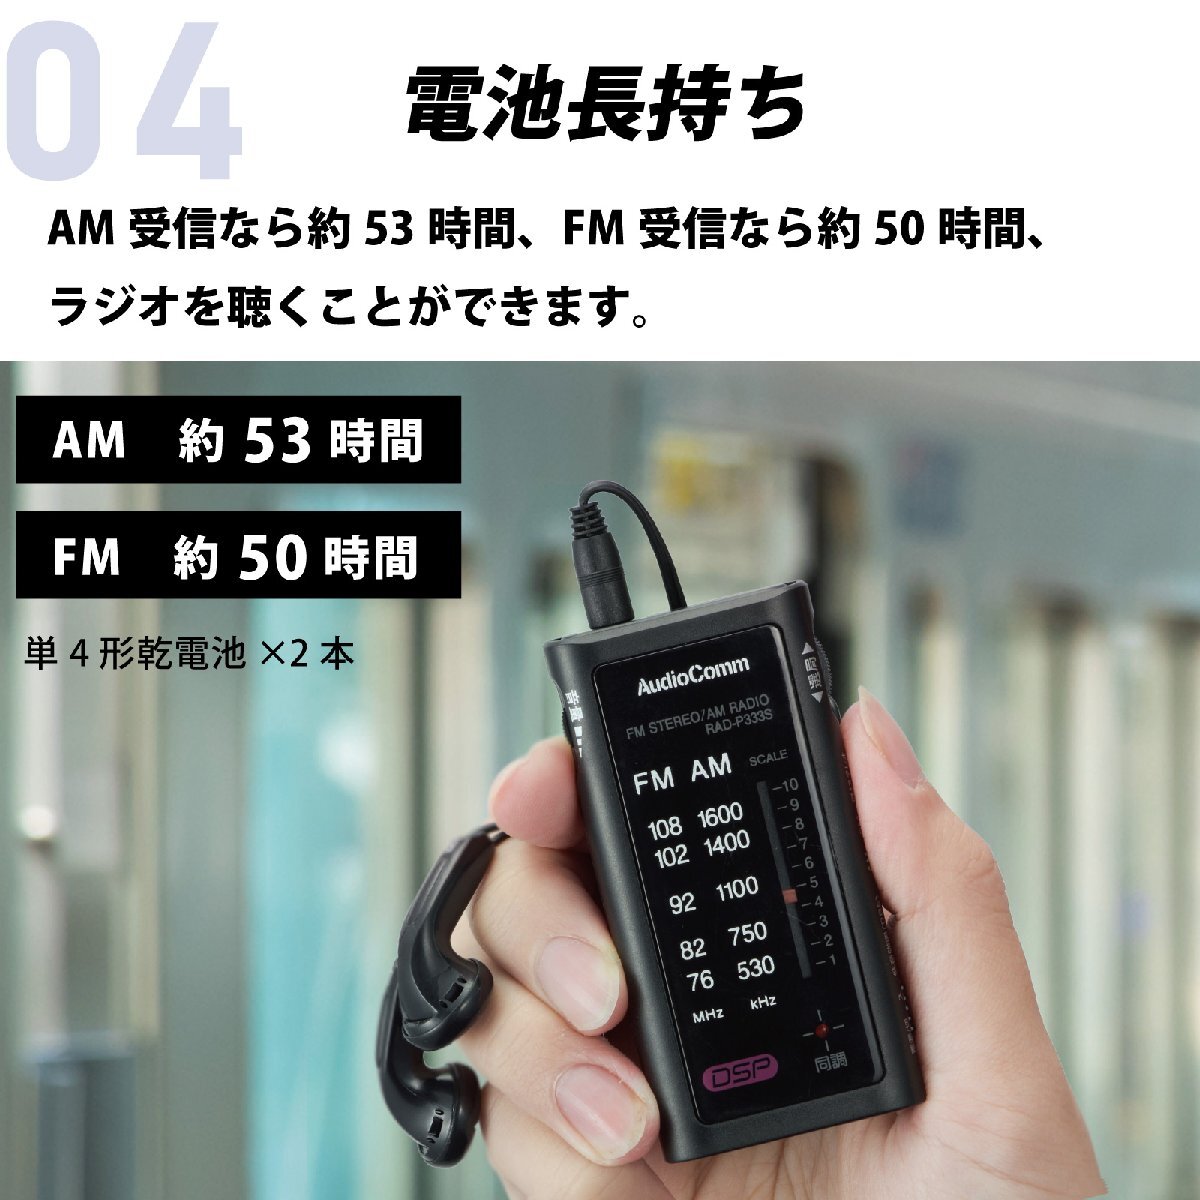 ラジオ 小型 ポータブルラジオ ポケットラジオ AudioComm ライターサイズラジオ イヤホン専用 ブラック｜RAD-P333S-K 03-0969 オーム電機_画像5